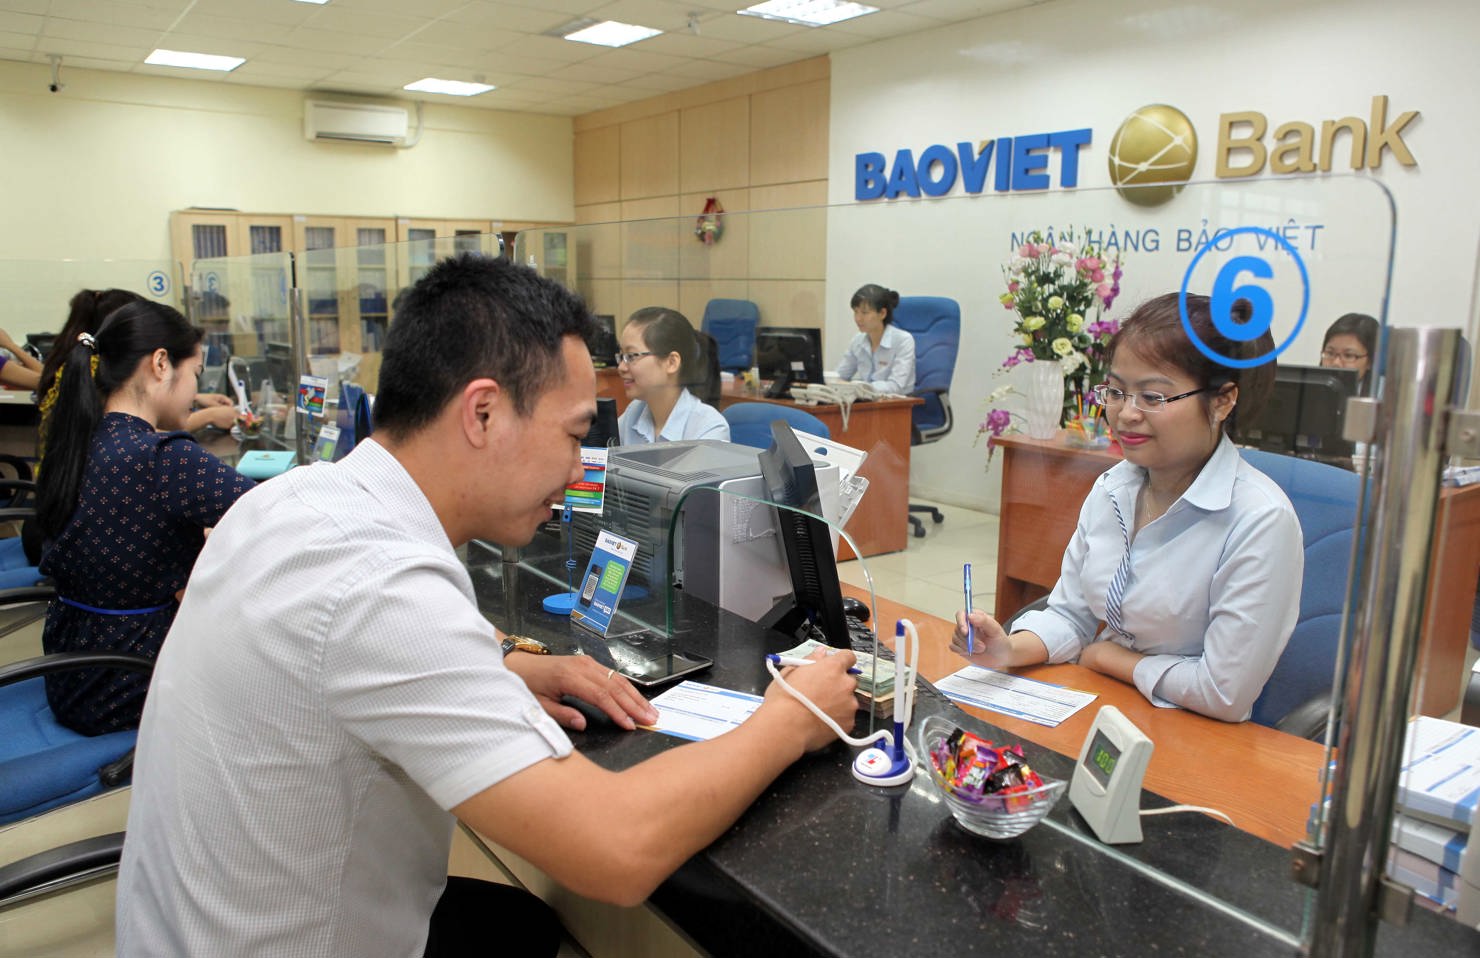 Giao dịch tại BAOVIET Bank chi nhánh Hà Nội. Nguồn: baoviet.com.vn